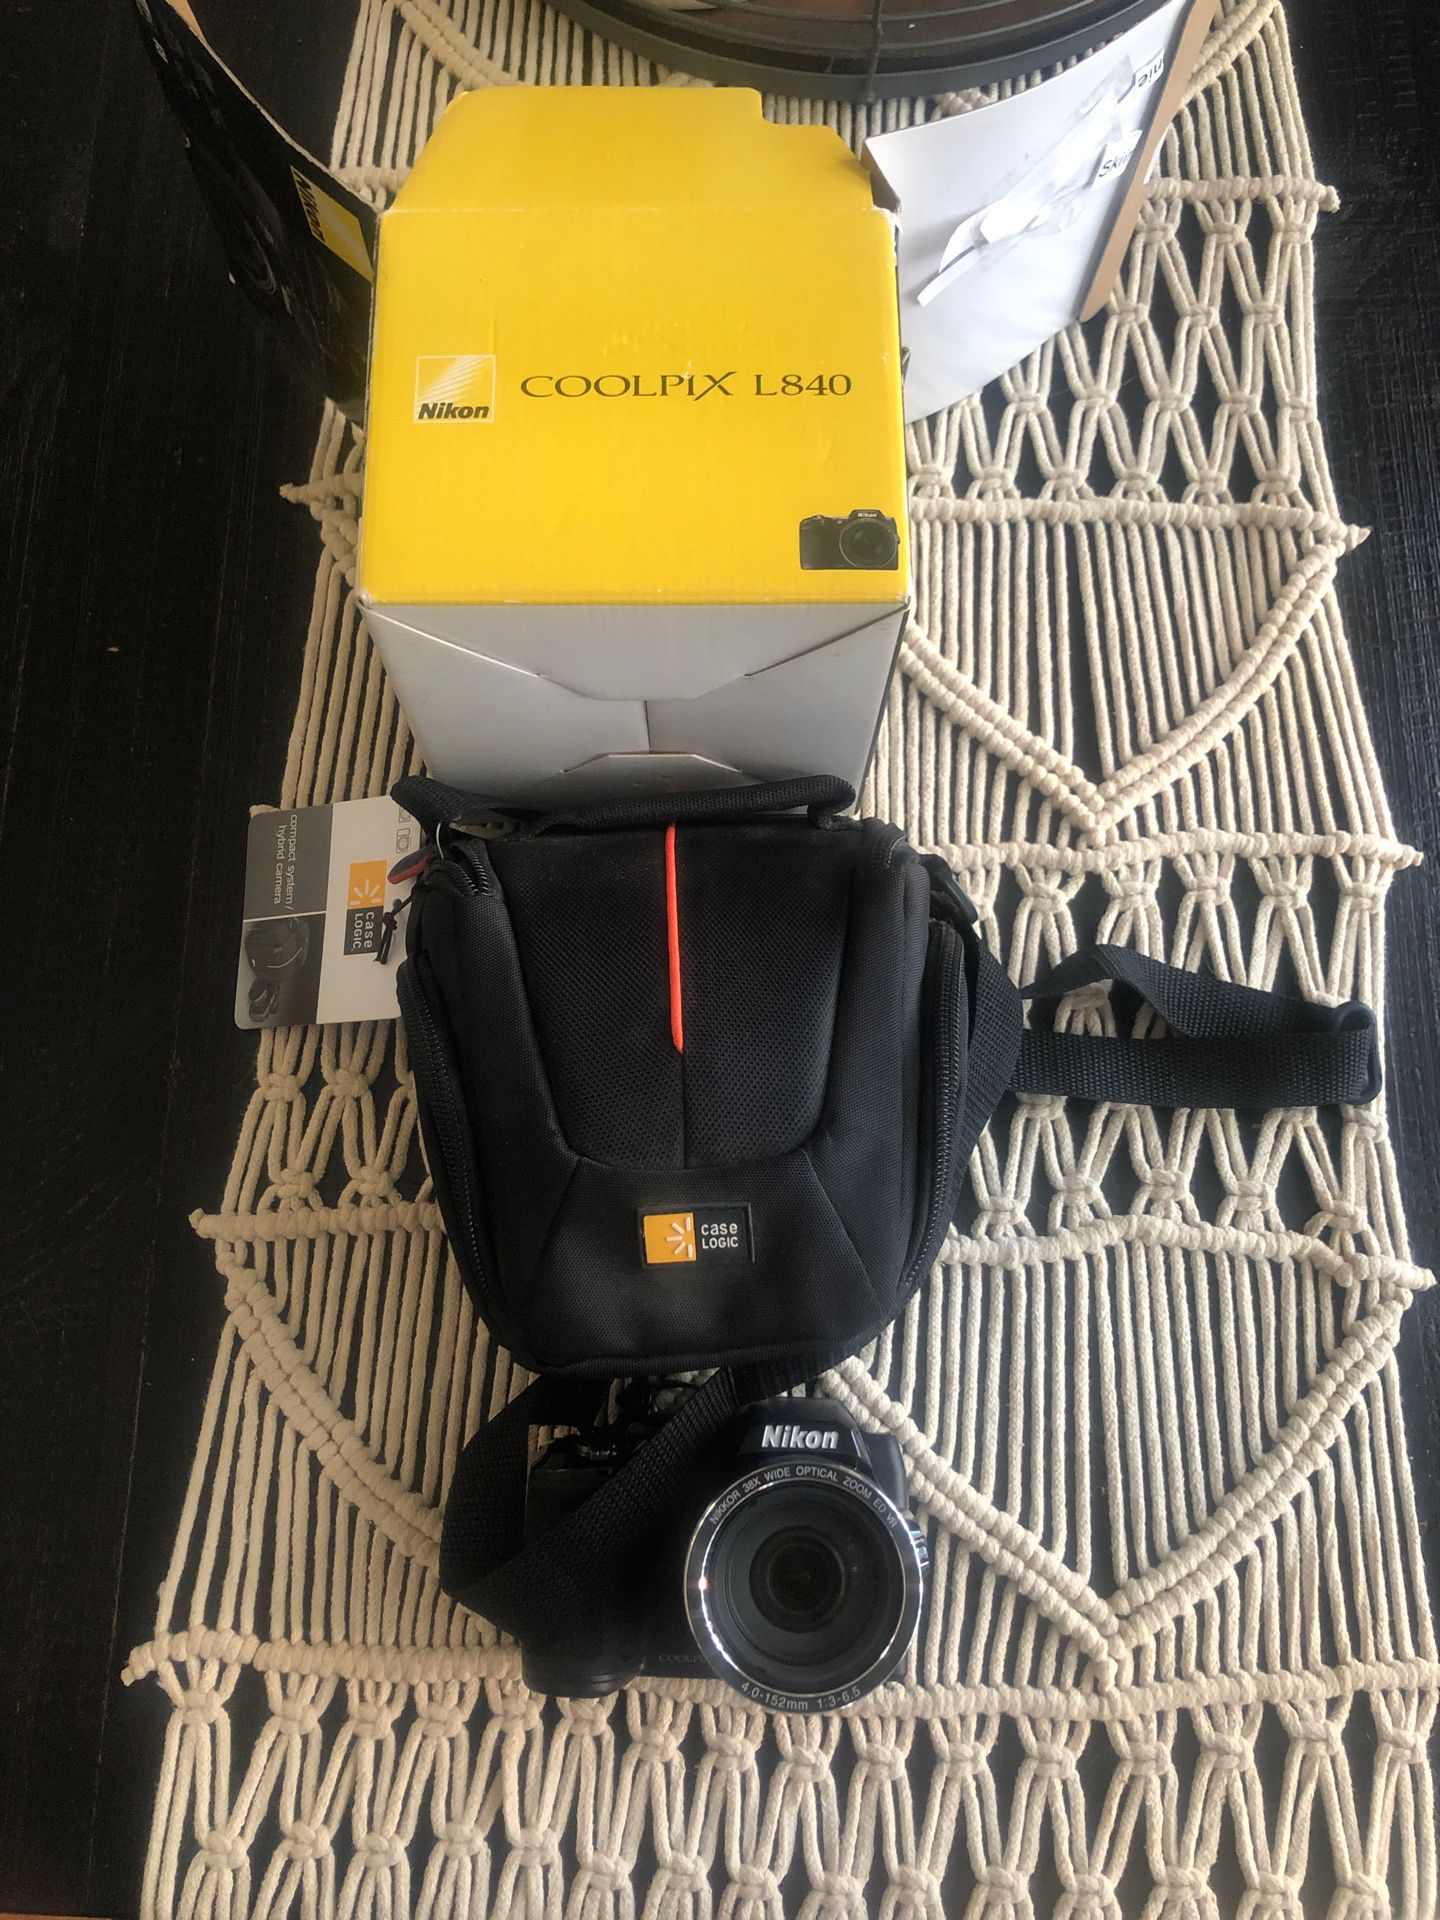 Nikon CoolPix L840 Camera and Case